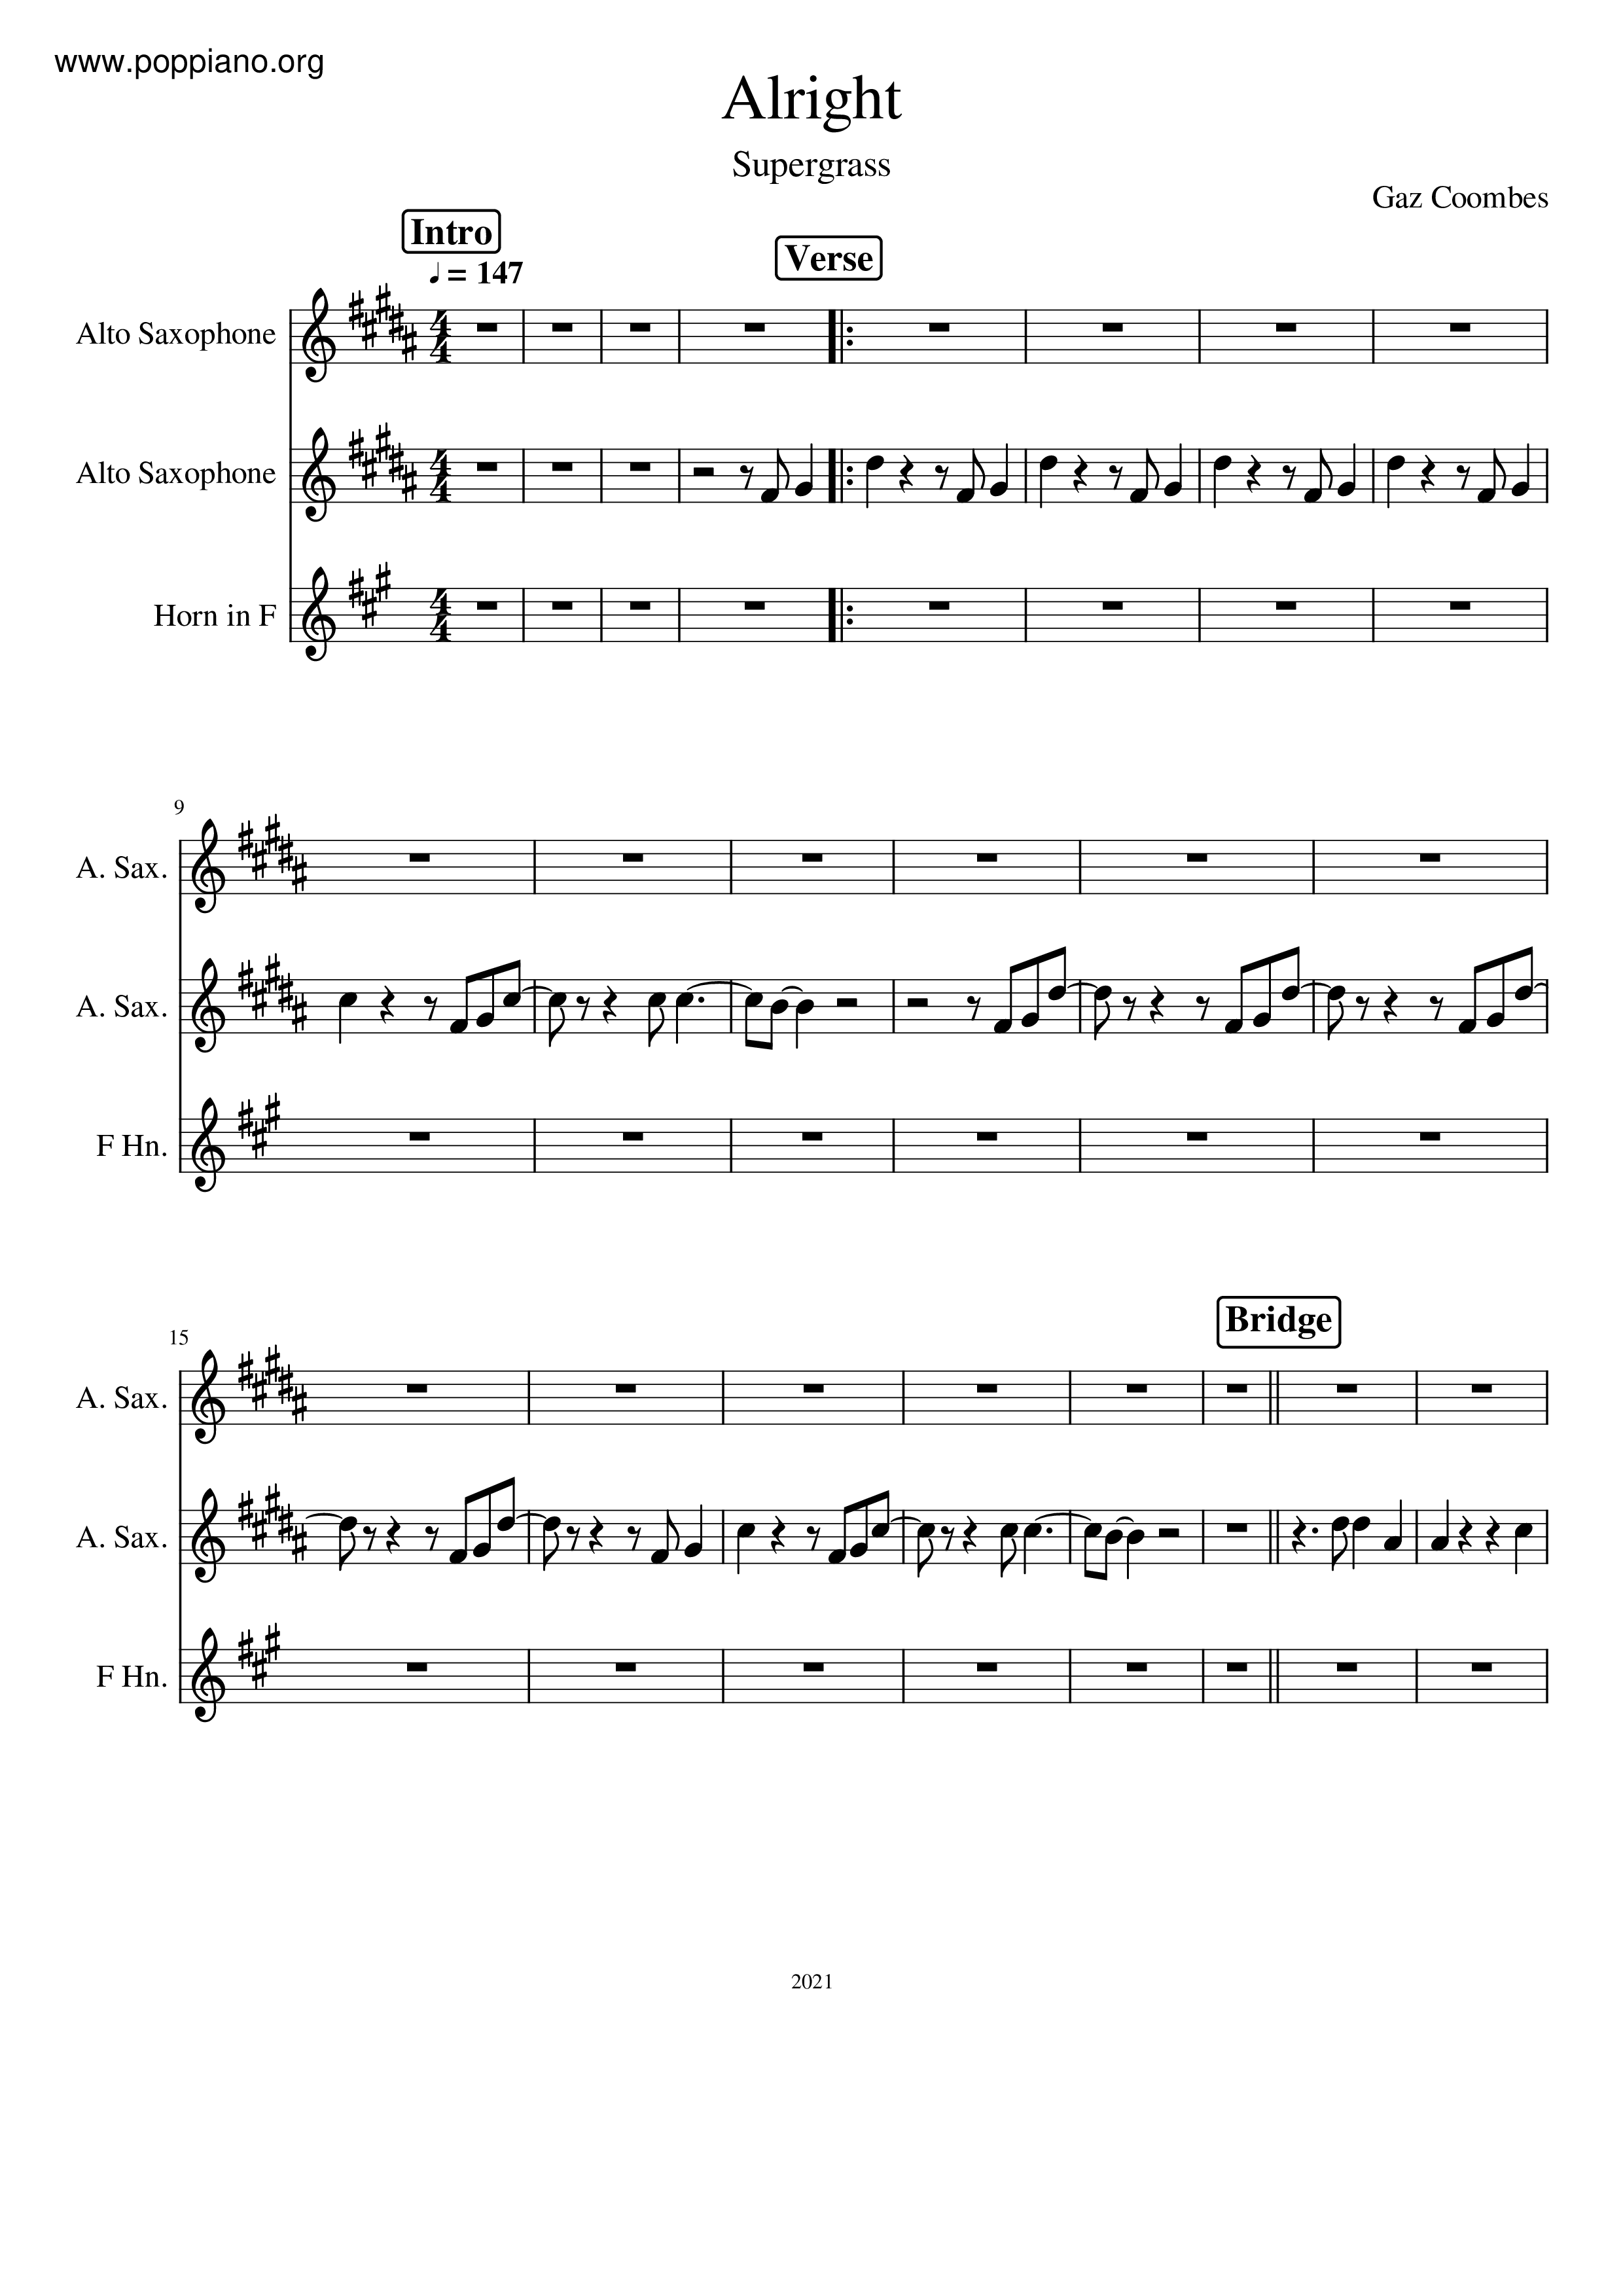 comerciante orden necesidad ☆ Supergrass-Alright Sax Score pdf, - Free Score Download ☆